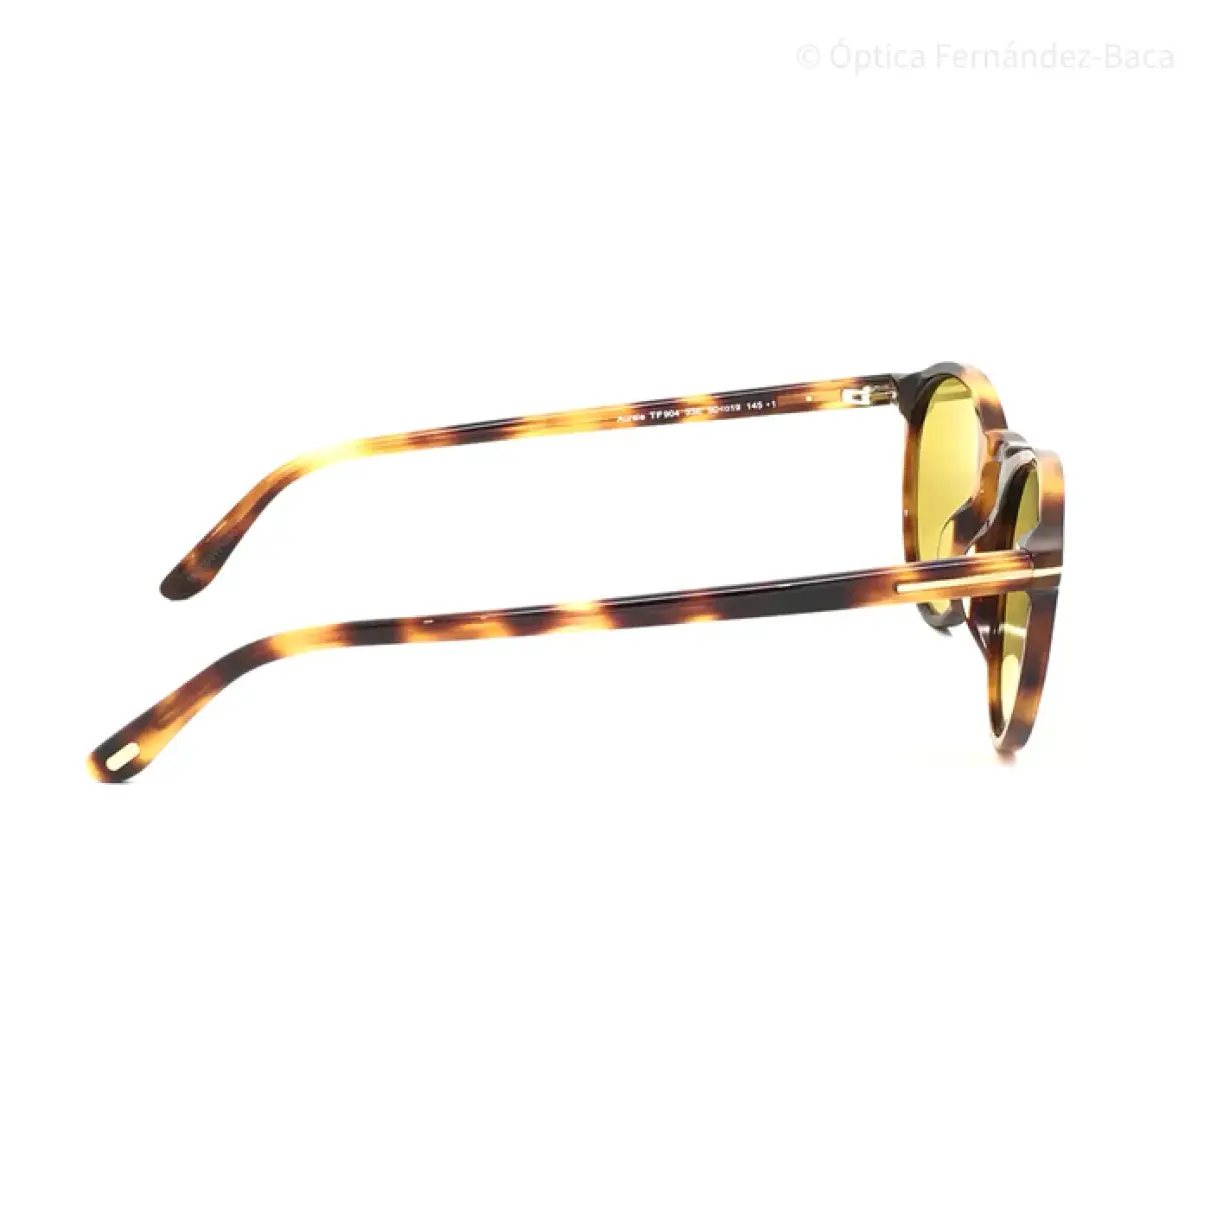 Buy Tom Ford Sunglasses online